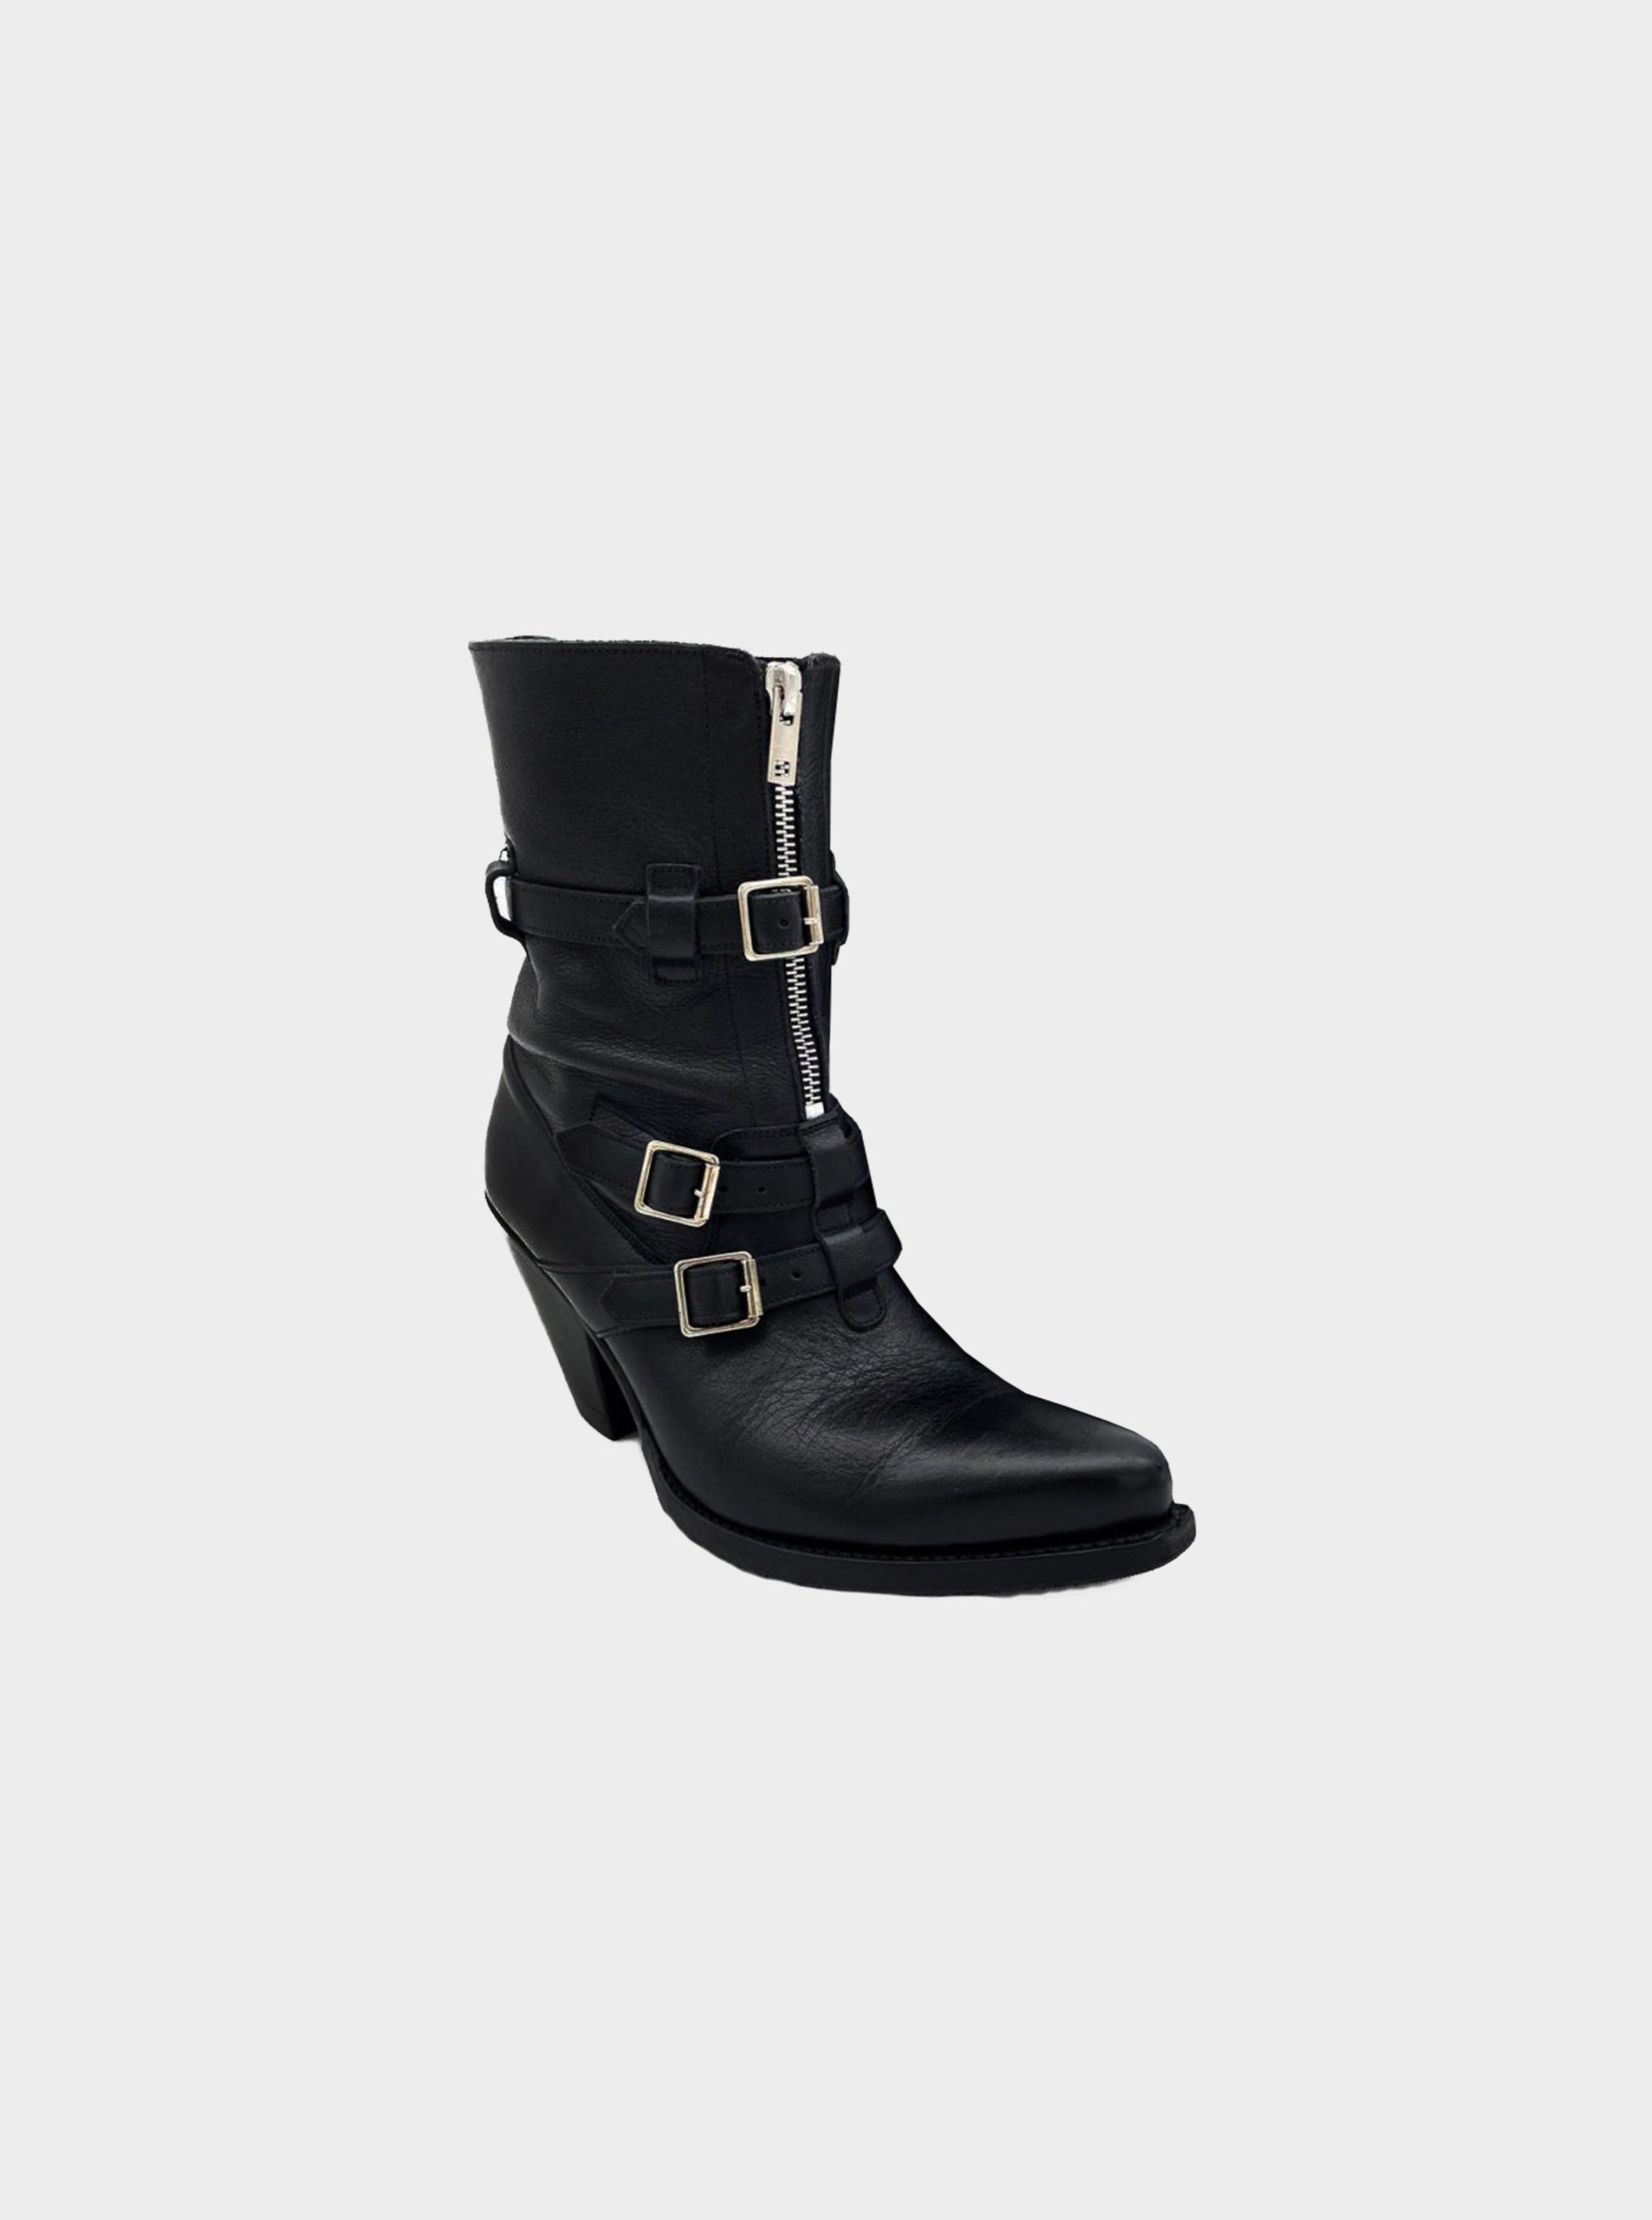 Celine SS 2019 Black Belted Ankle Boots